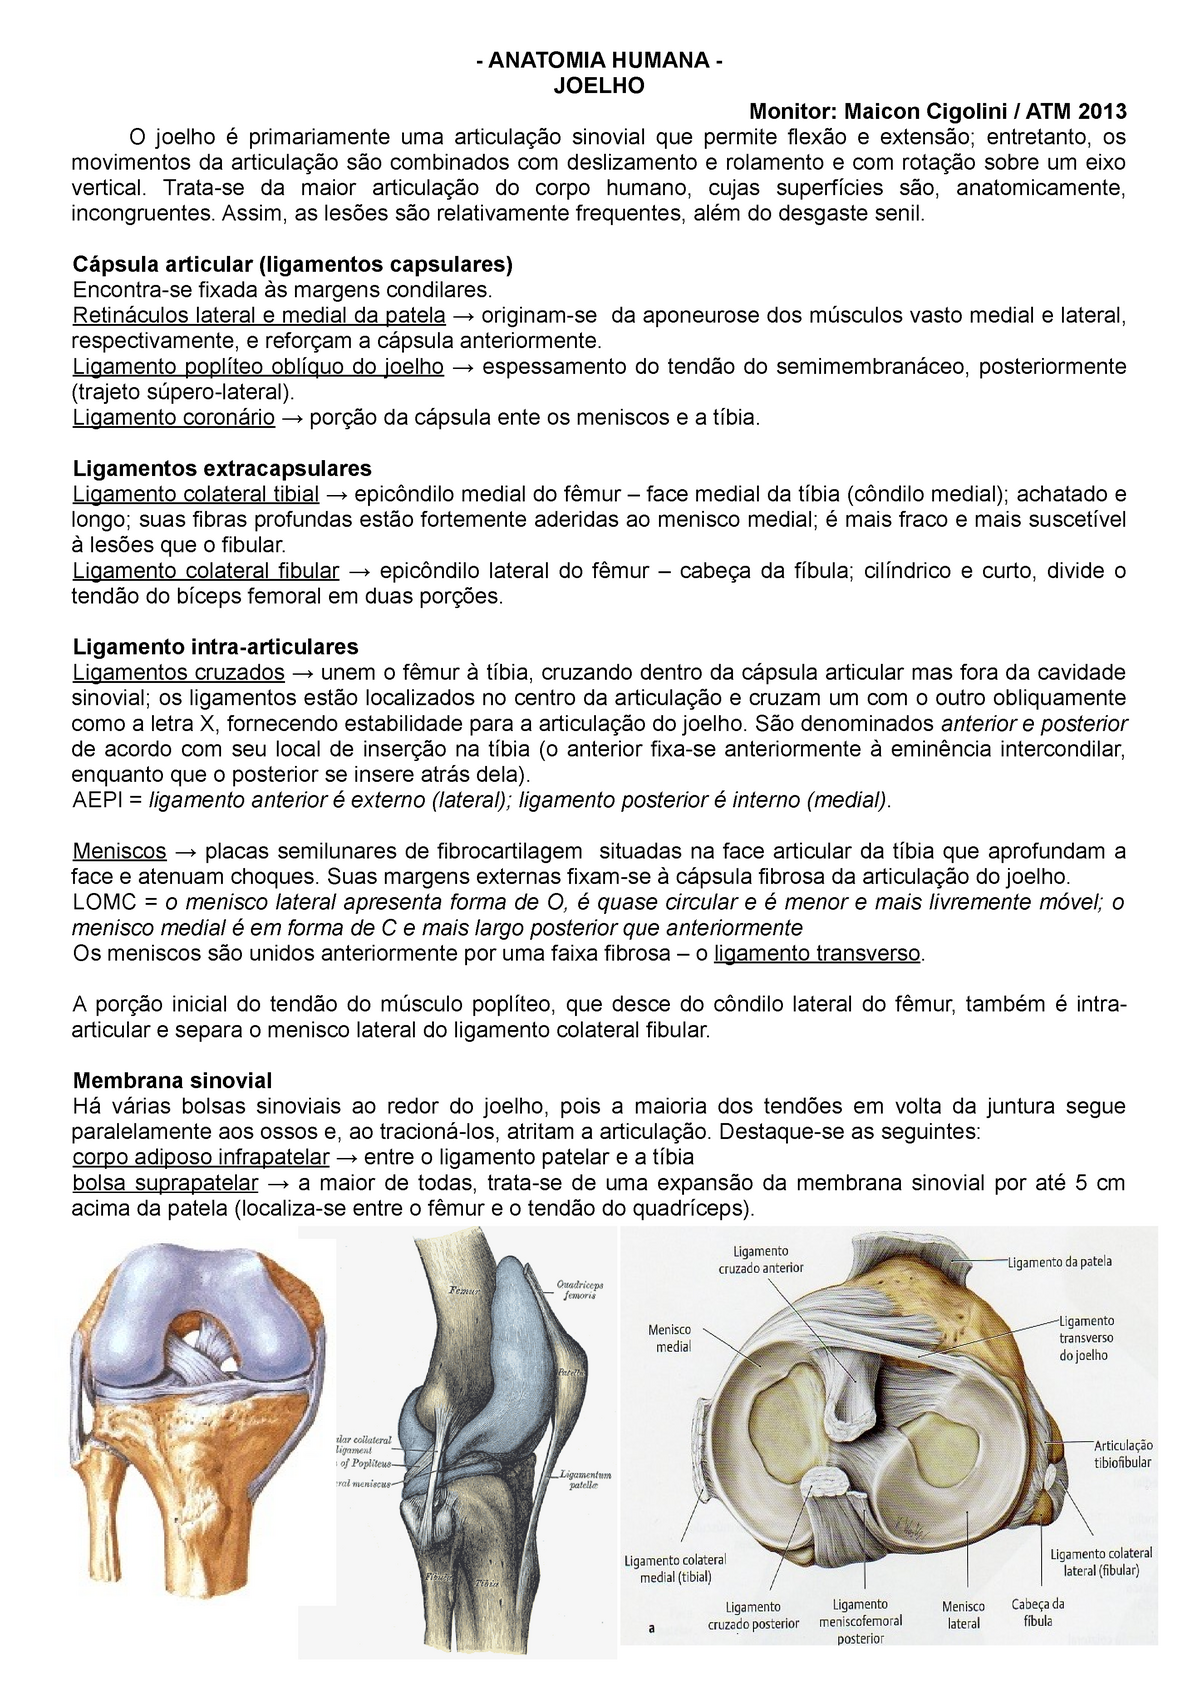 Joelho Resumo Anatomia Humana Anatomia Humana Joelho Monitor Maicon Cigolini Atm O